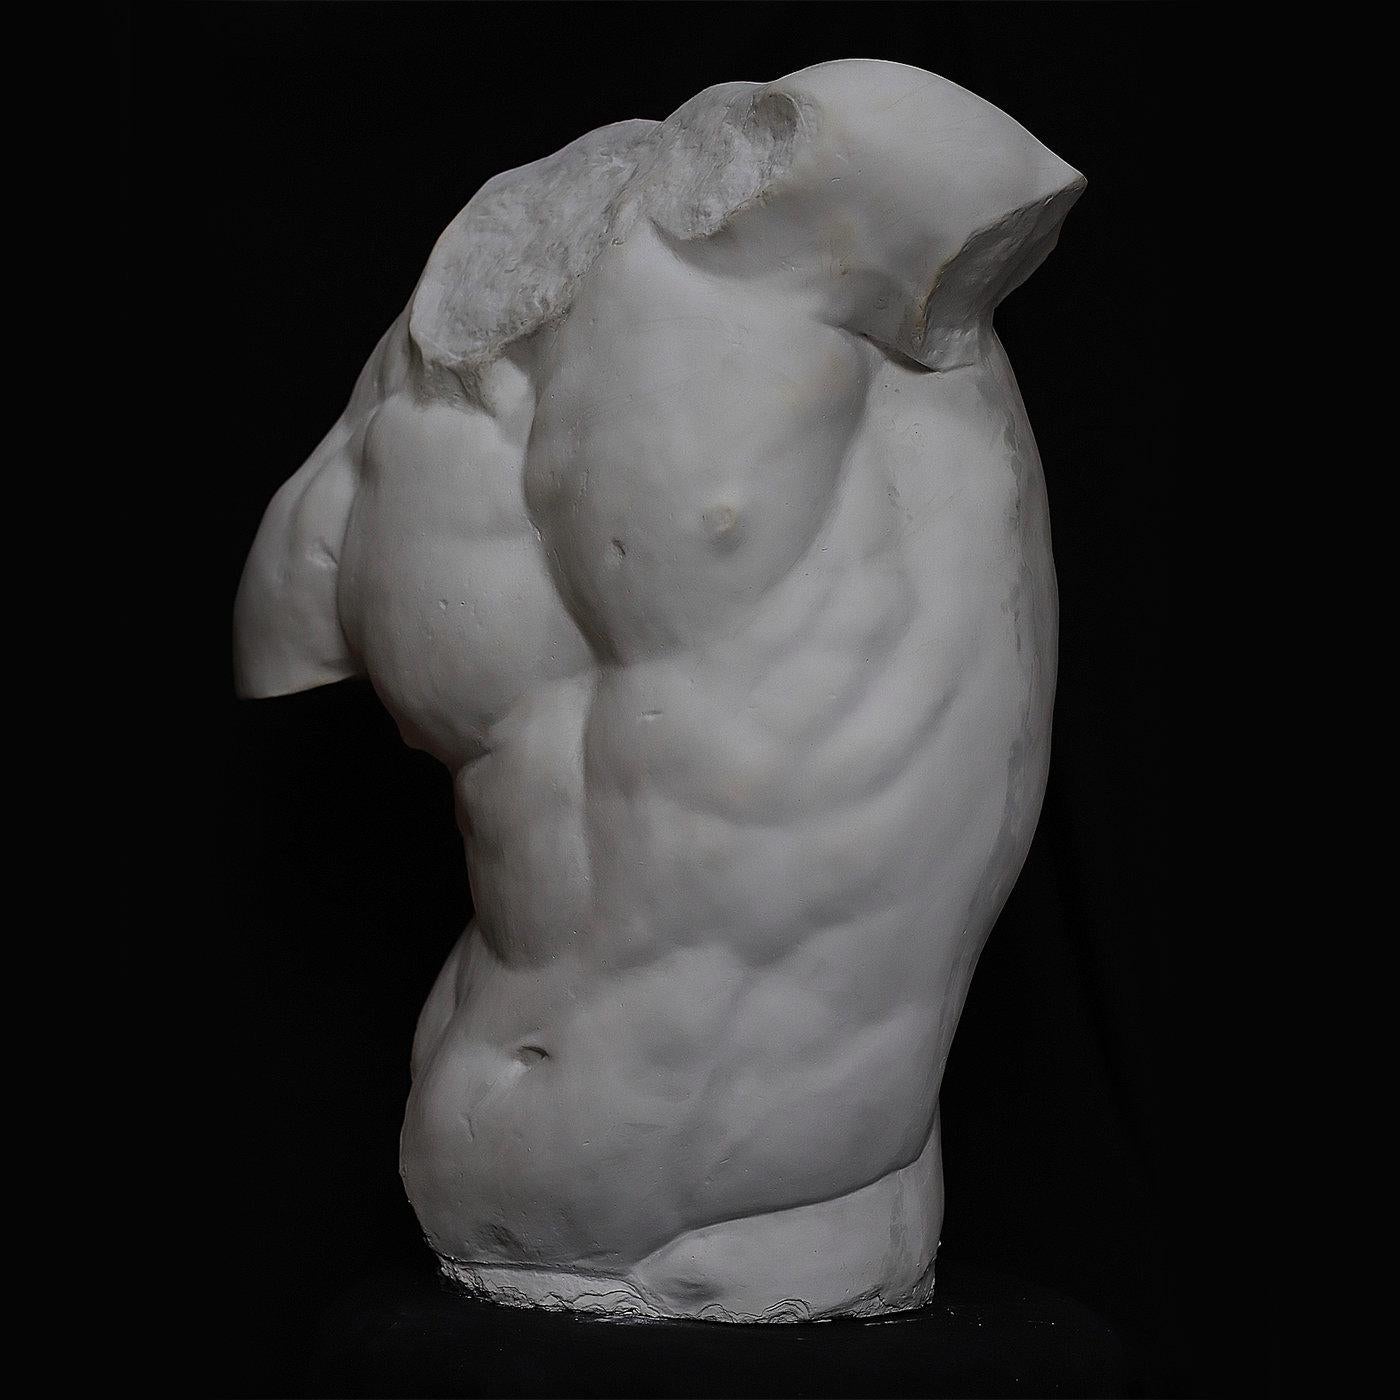 Il s'agit d'un buste en plâtre reproduisant le Torse Gaddi, la célèbre sculpture fragmentaire exposée dans les musées des Offices à Florence, qui a inspiré de nombreux grands artistes de la Renaissance, dont Michelangelo. Cette pièce, réalisée à la